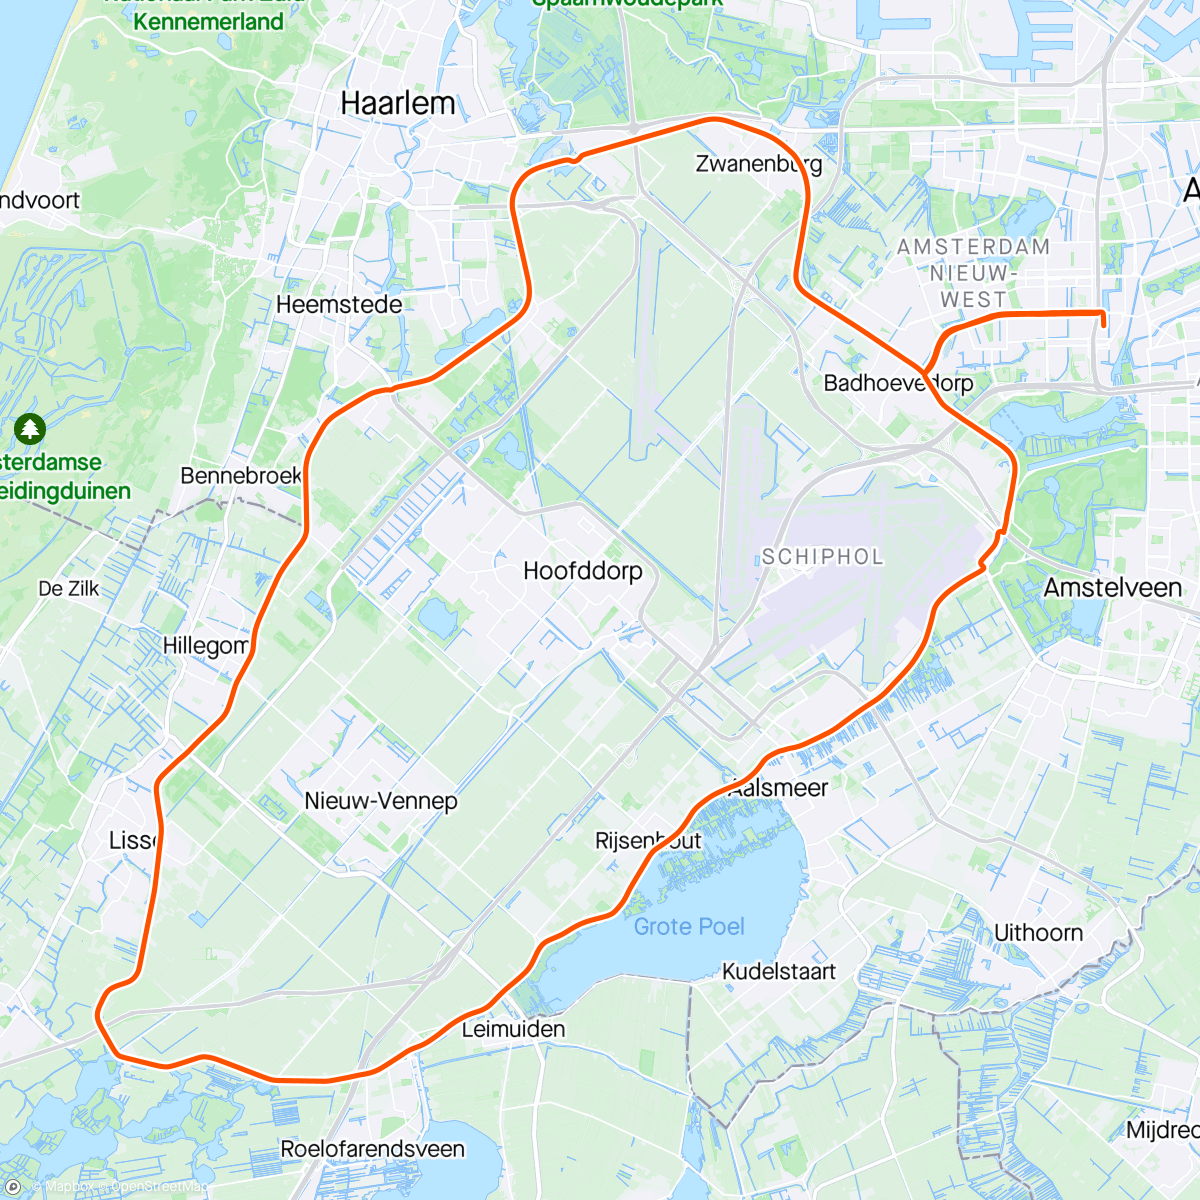 「Rondje Ringvaart」活動的地圖